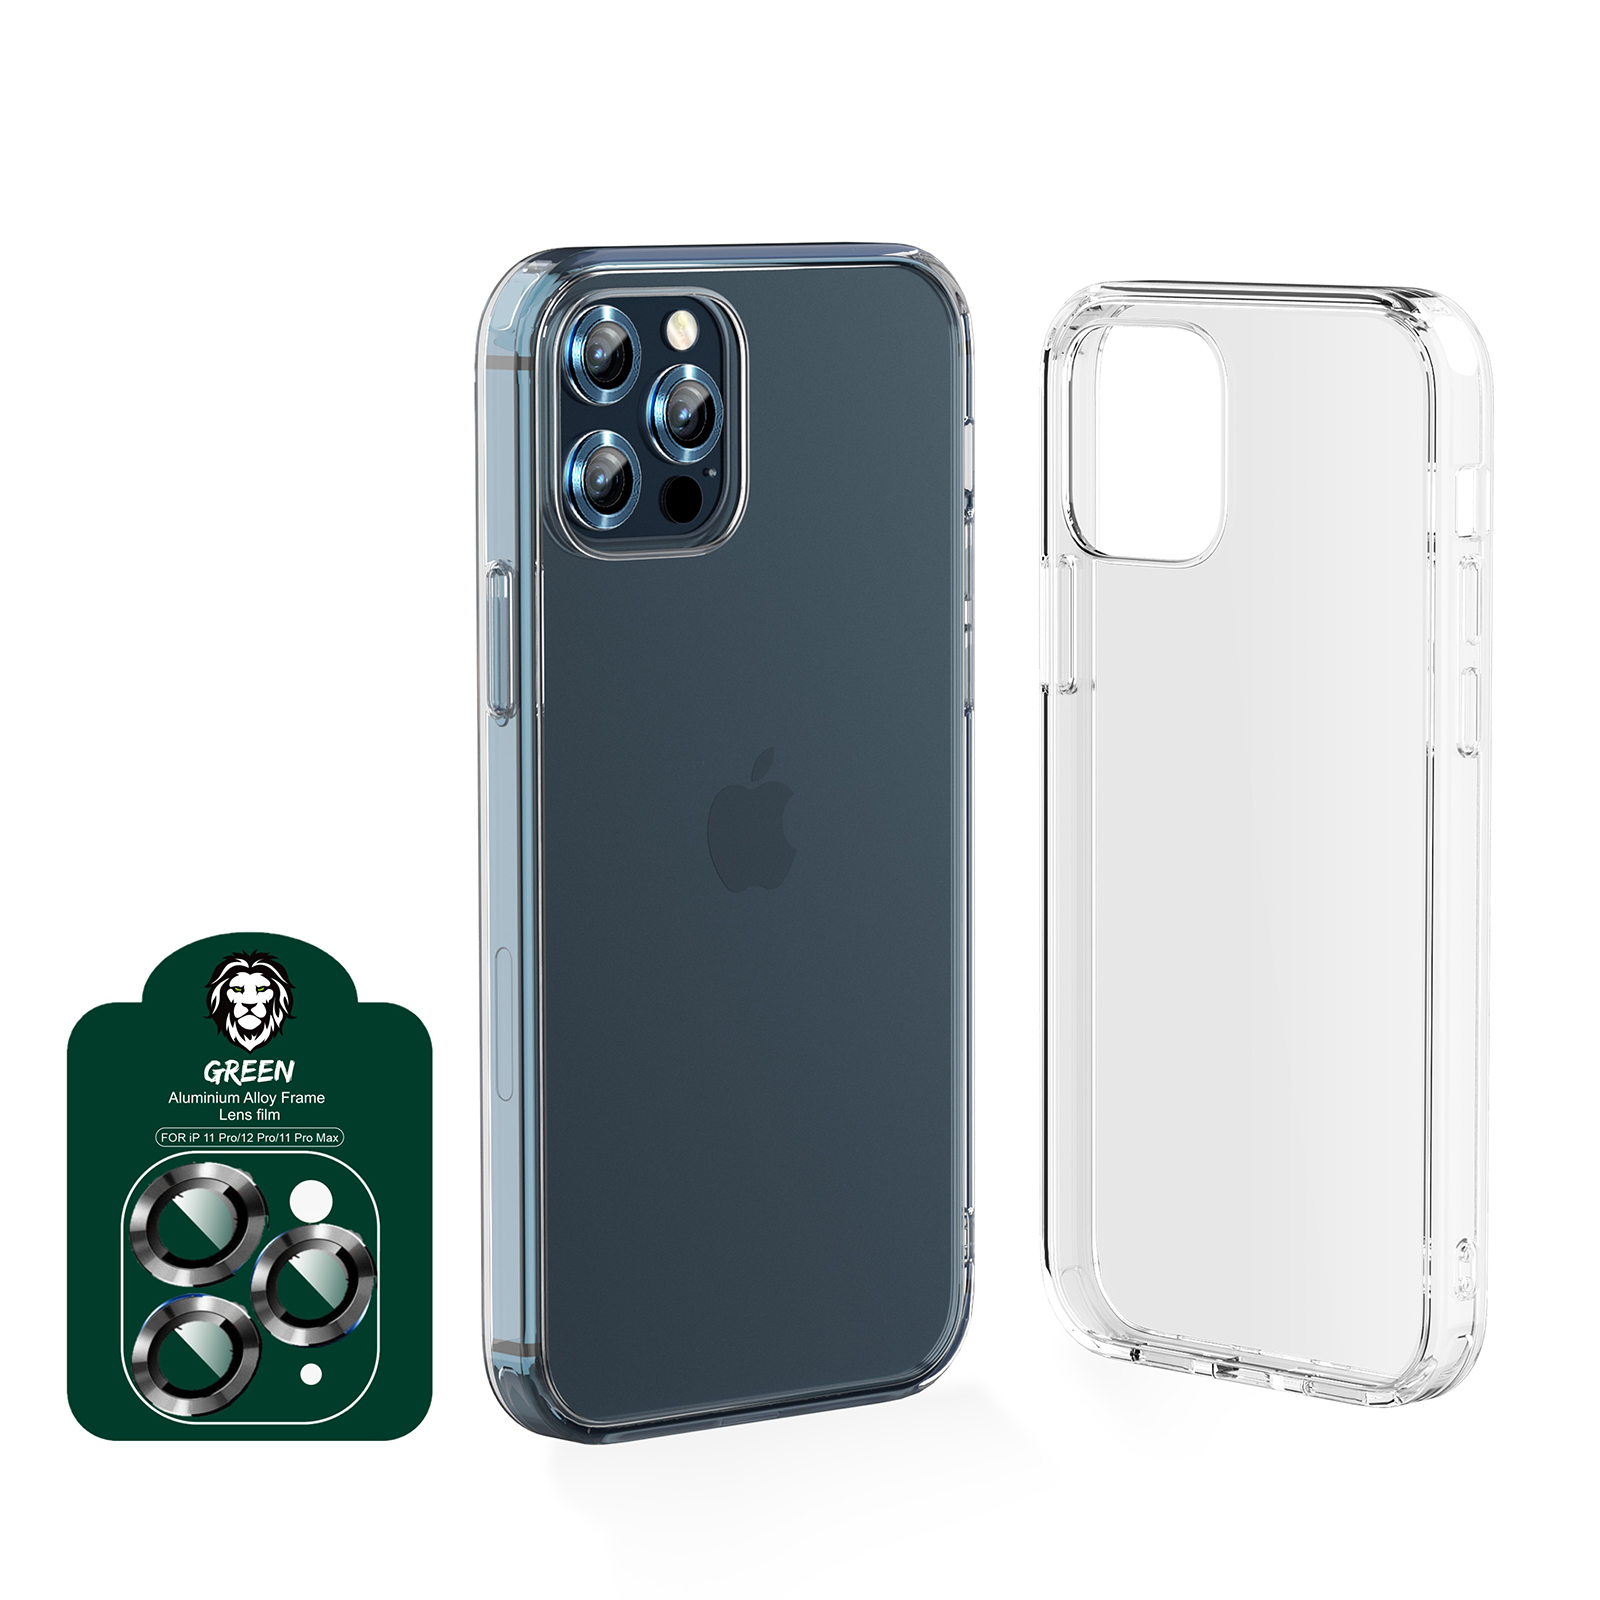 محافظ صفحه نمایش گرین مدل 4in1 مناسب برای گوشی موبایل اپل iPhone 12 Pro max به همراه محافظ پشت گوشی و محافظ لنز دوربین و کاور